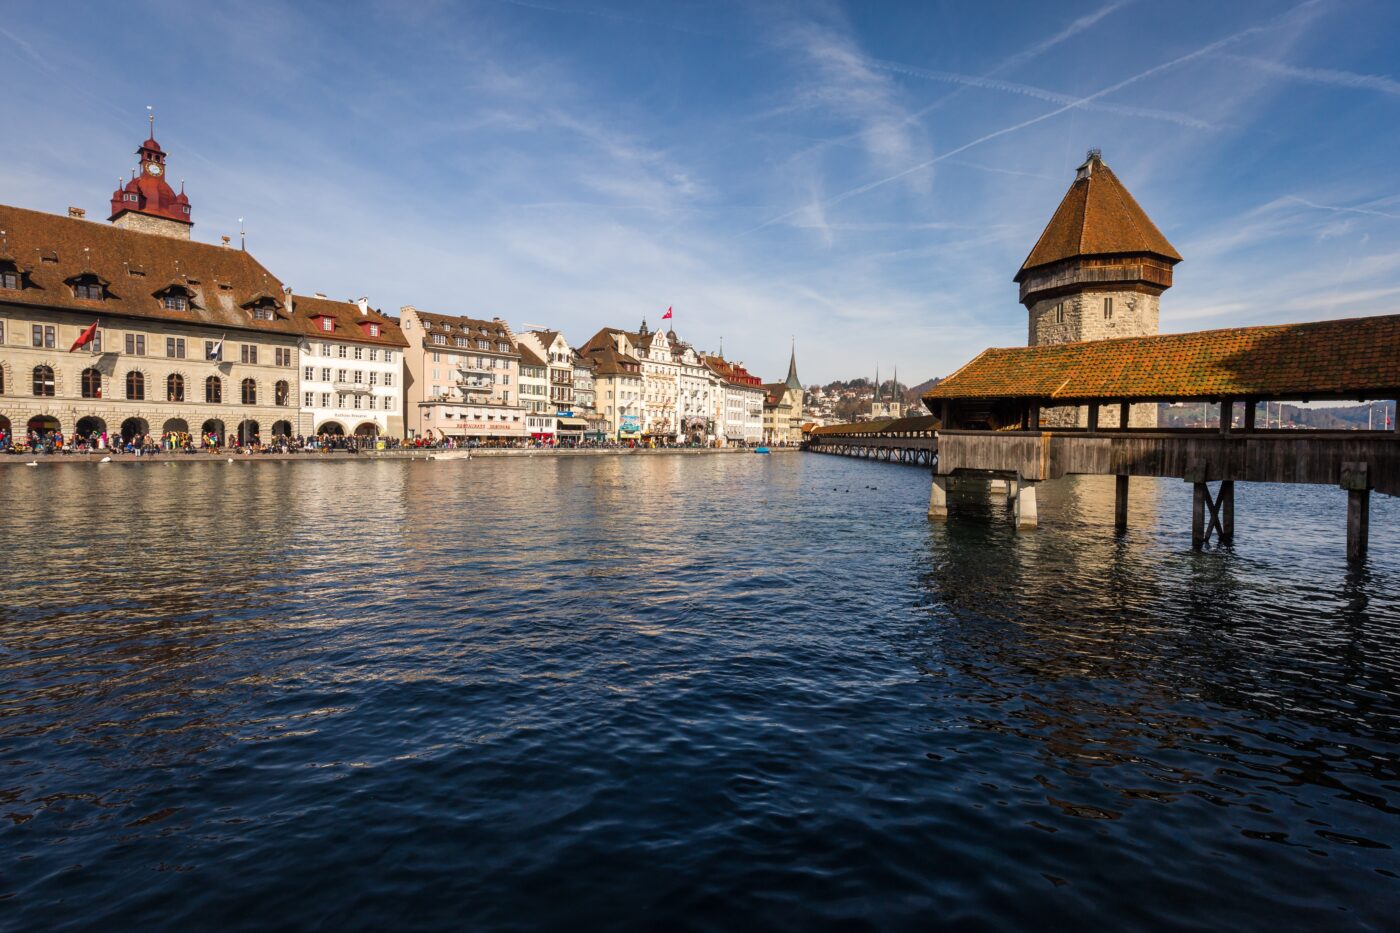 Bild mit Ausblick auf die Kappelbrücke und den Wasserturm rechts, links sieht man die Häuser der Luzerner Altstadt.